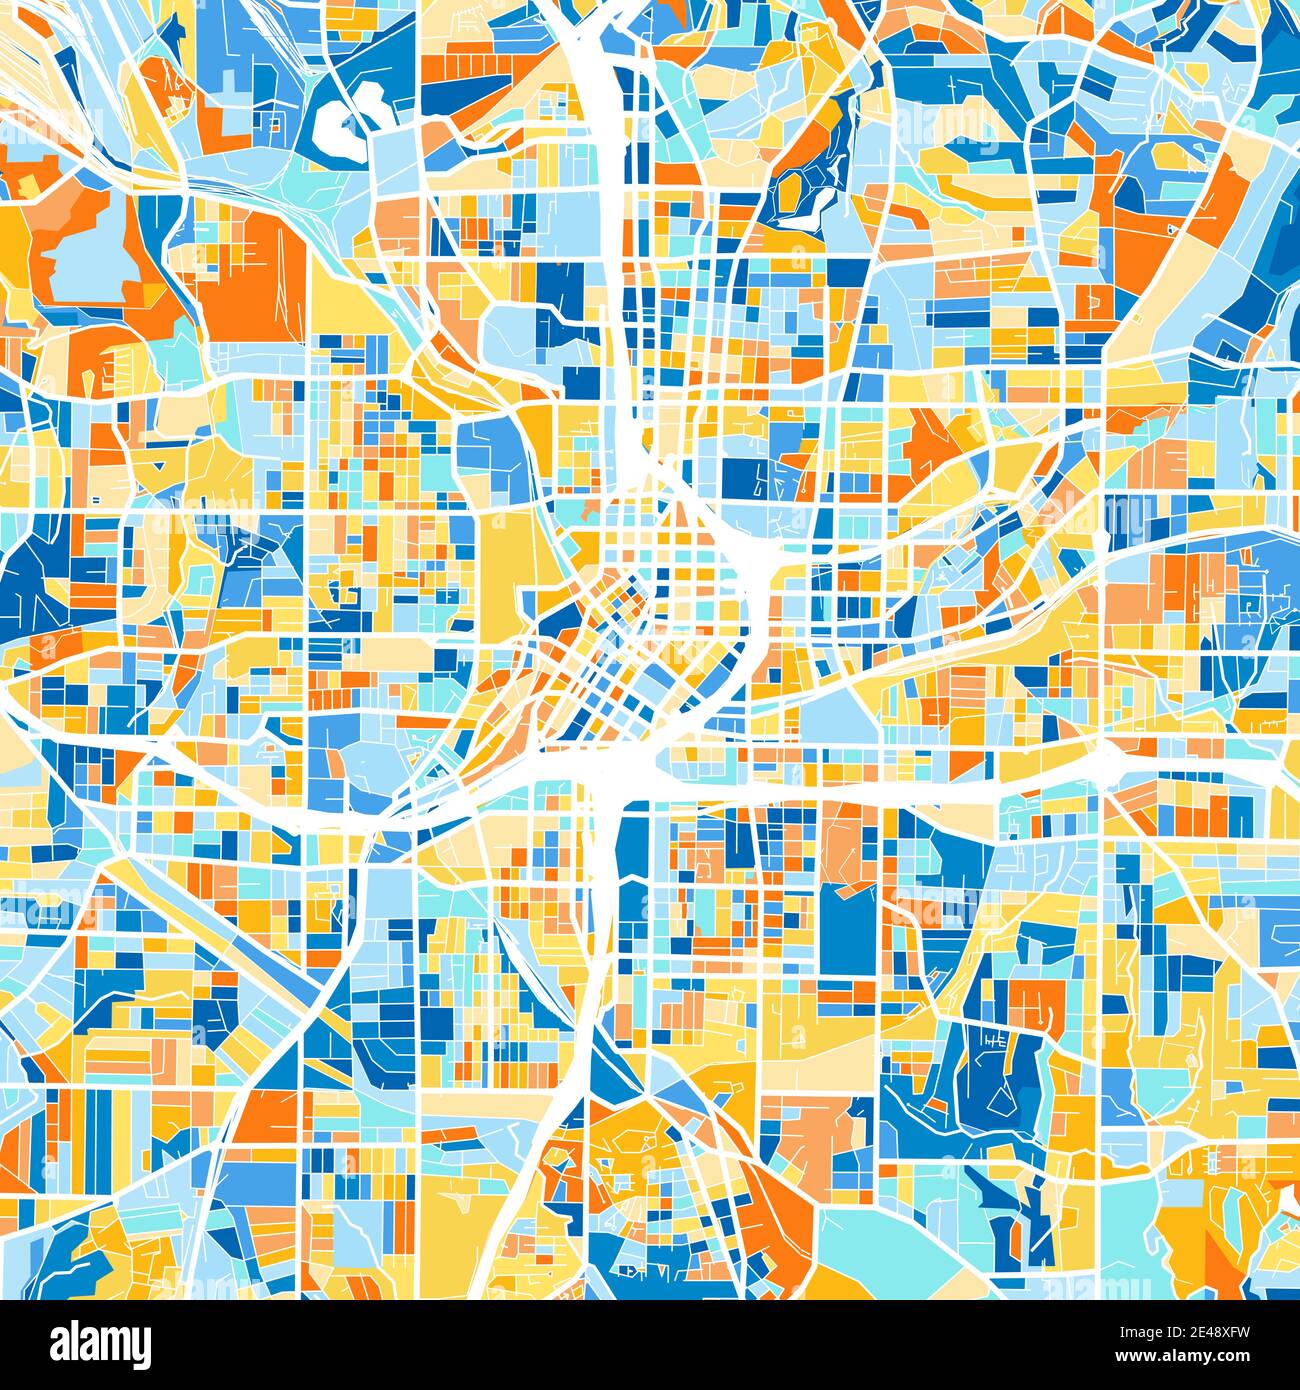 Farbkunstkarte von Atlanta, Georgia, UnitedStates in Blau und Orangen. Die Farbabstufungen in der Atlanta-Karte folgen einem zufälligen Muster. Stock Vektor